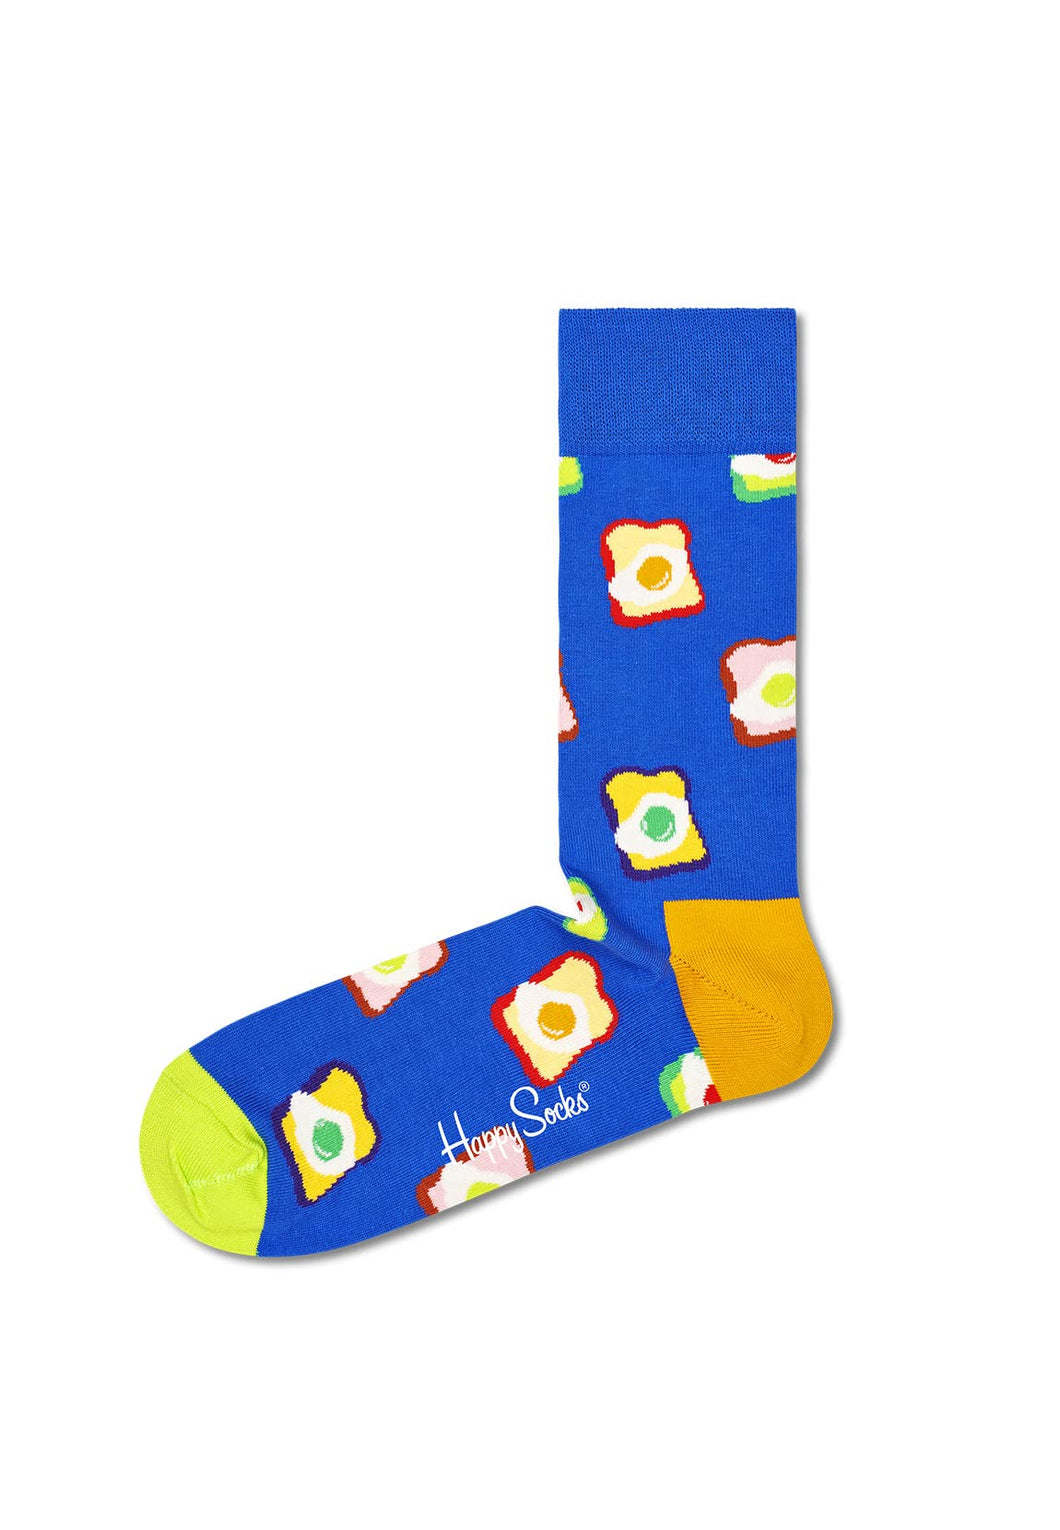 Happy Socks 1-Pack Toasted Egg Socks Gift Box Calzini, Blu, M Uomo